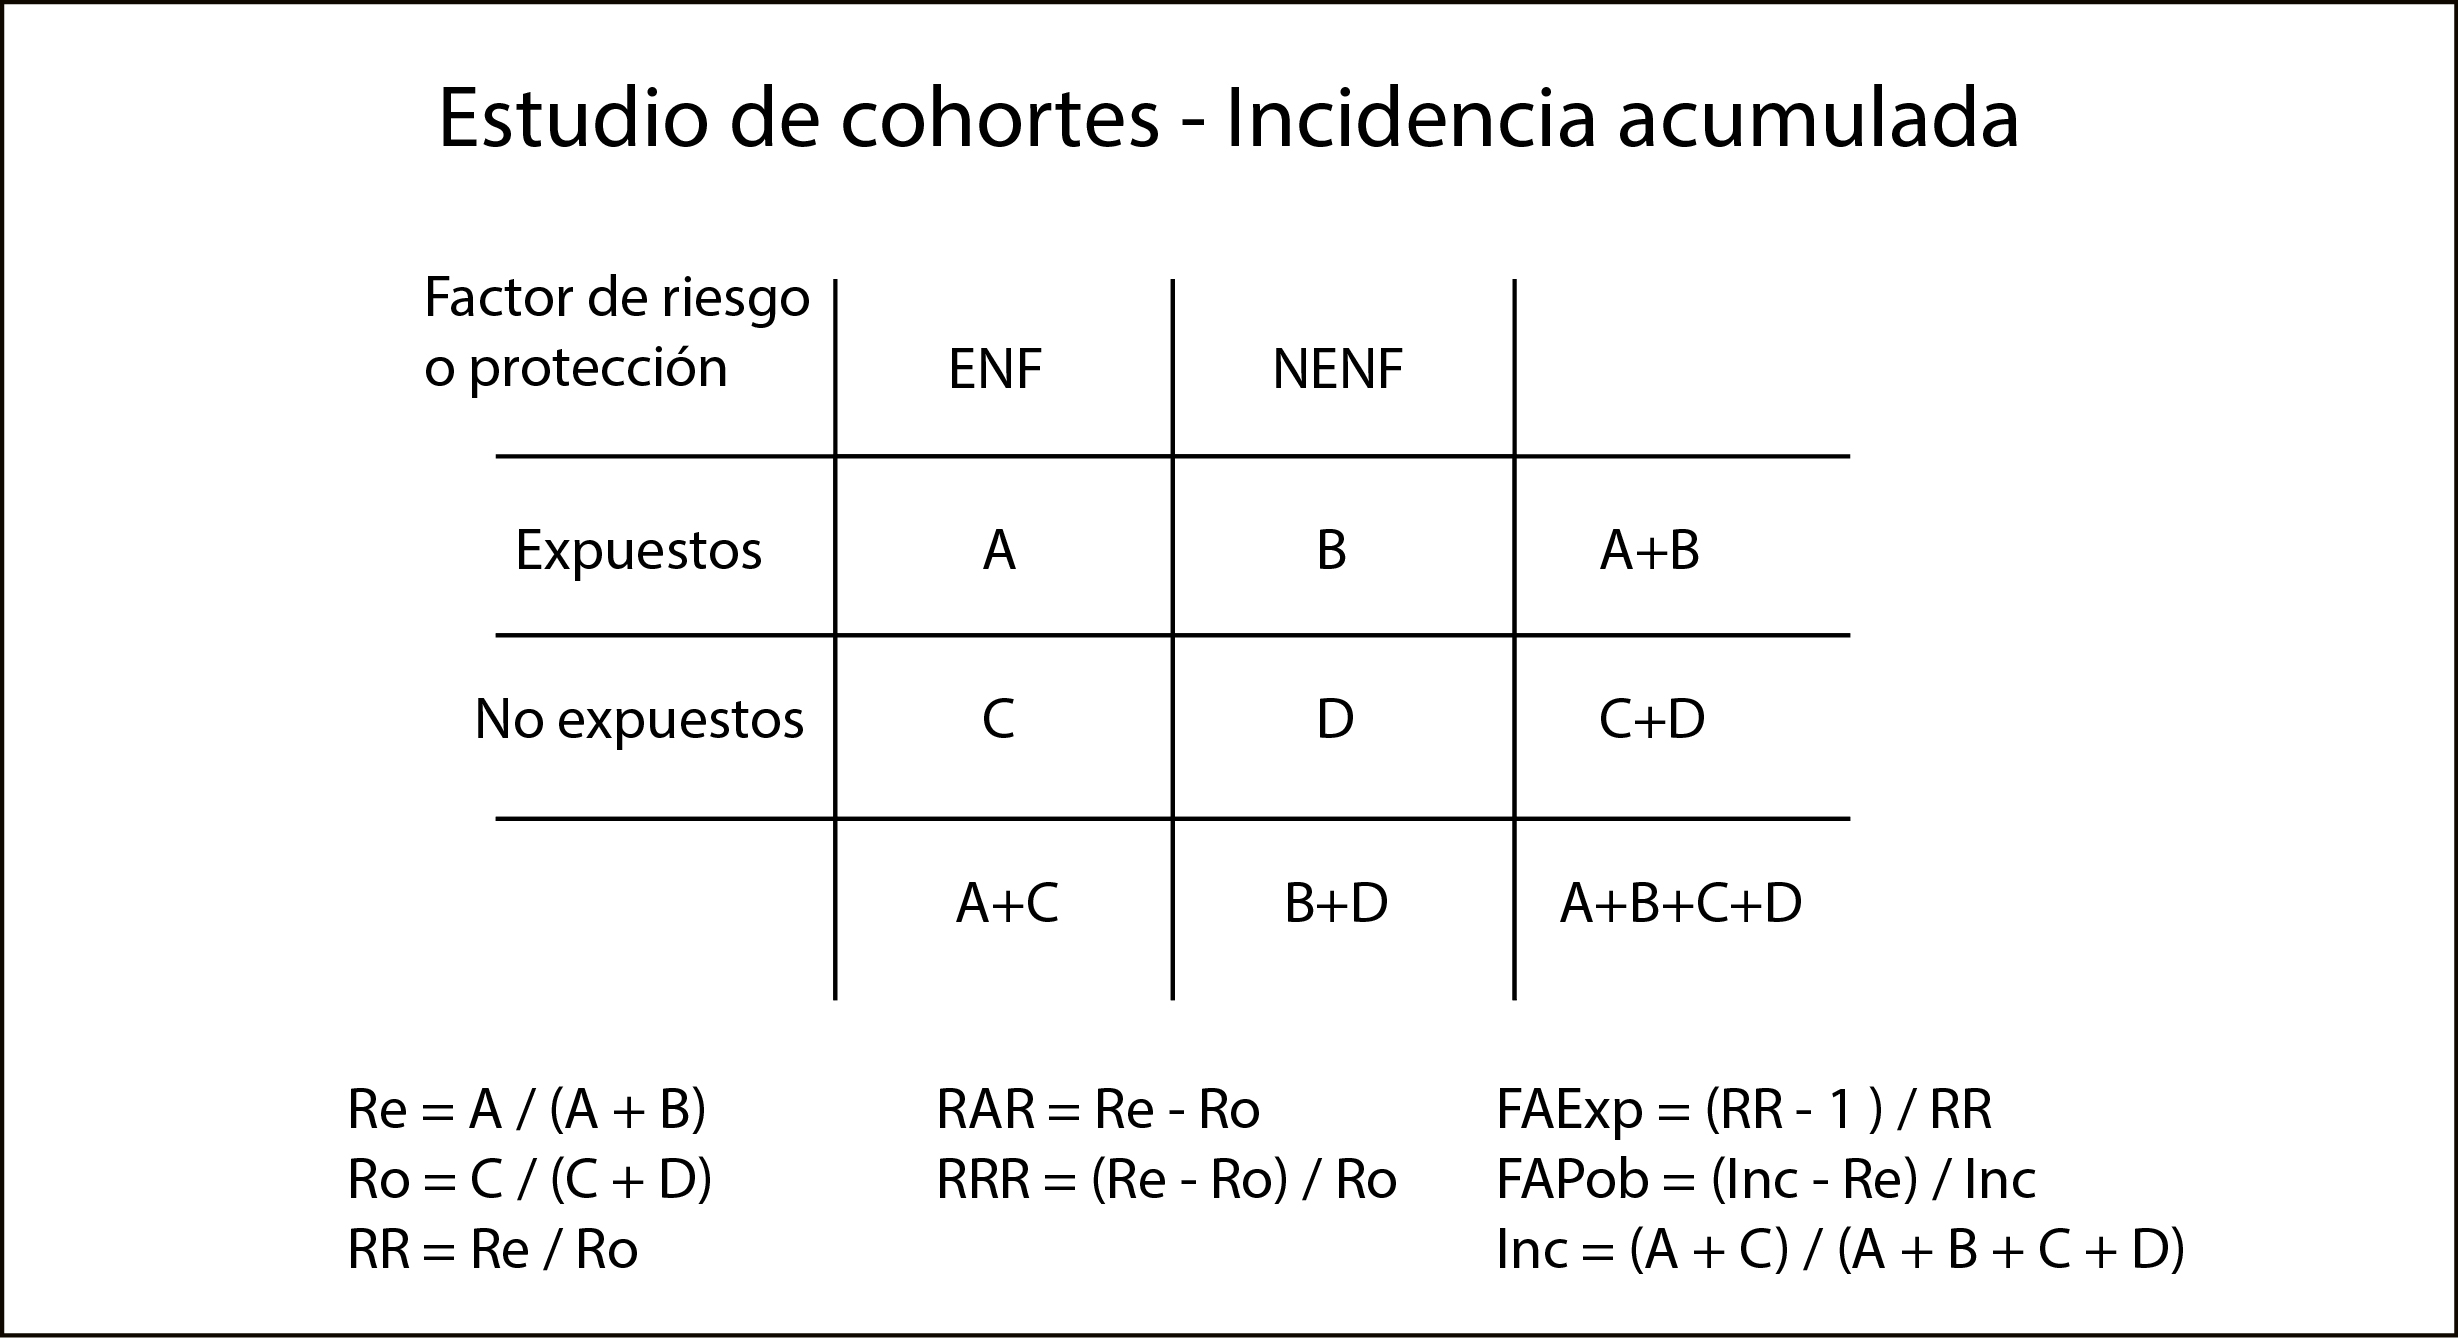 Figura 2. Tabla de contingencia para el cálculo de las medidas de frecuencia y asociación en los estudios de cohortes de incidencia acumulada.